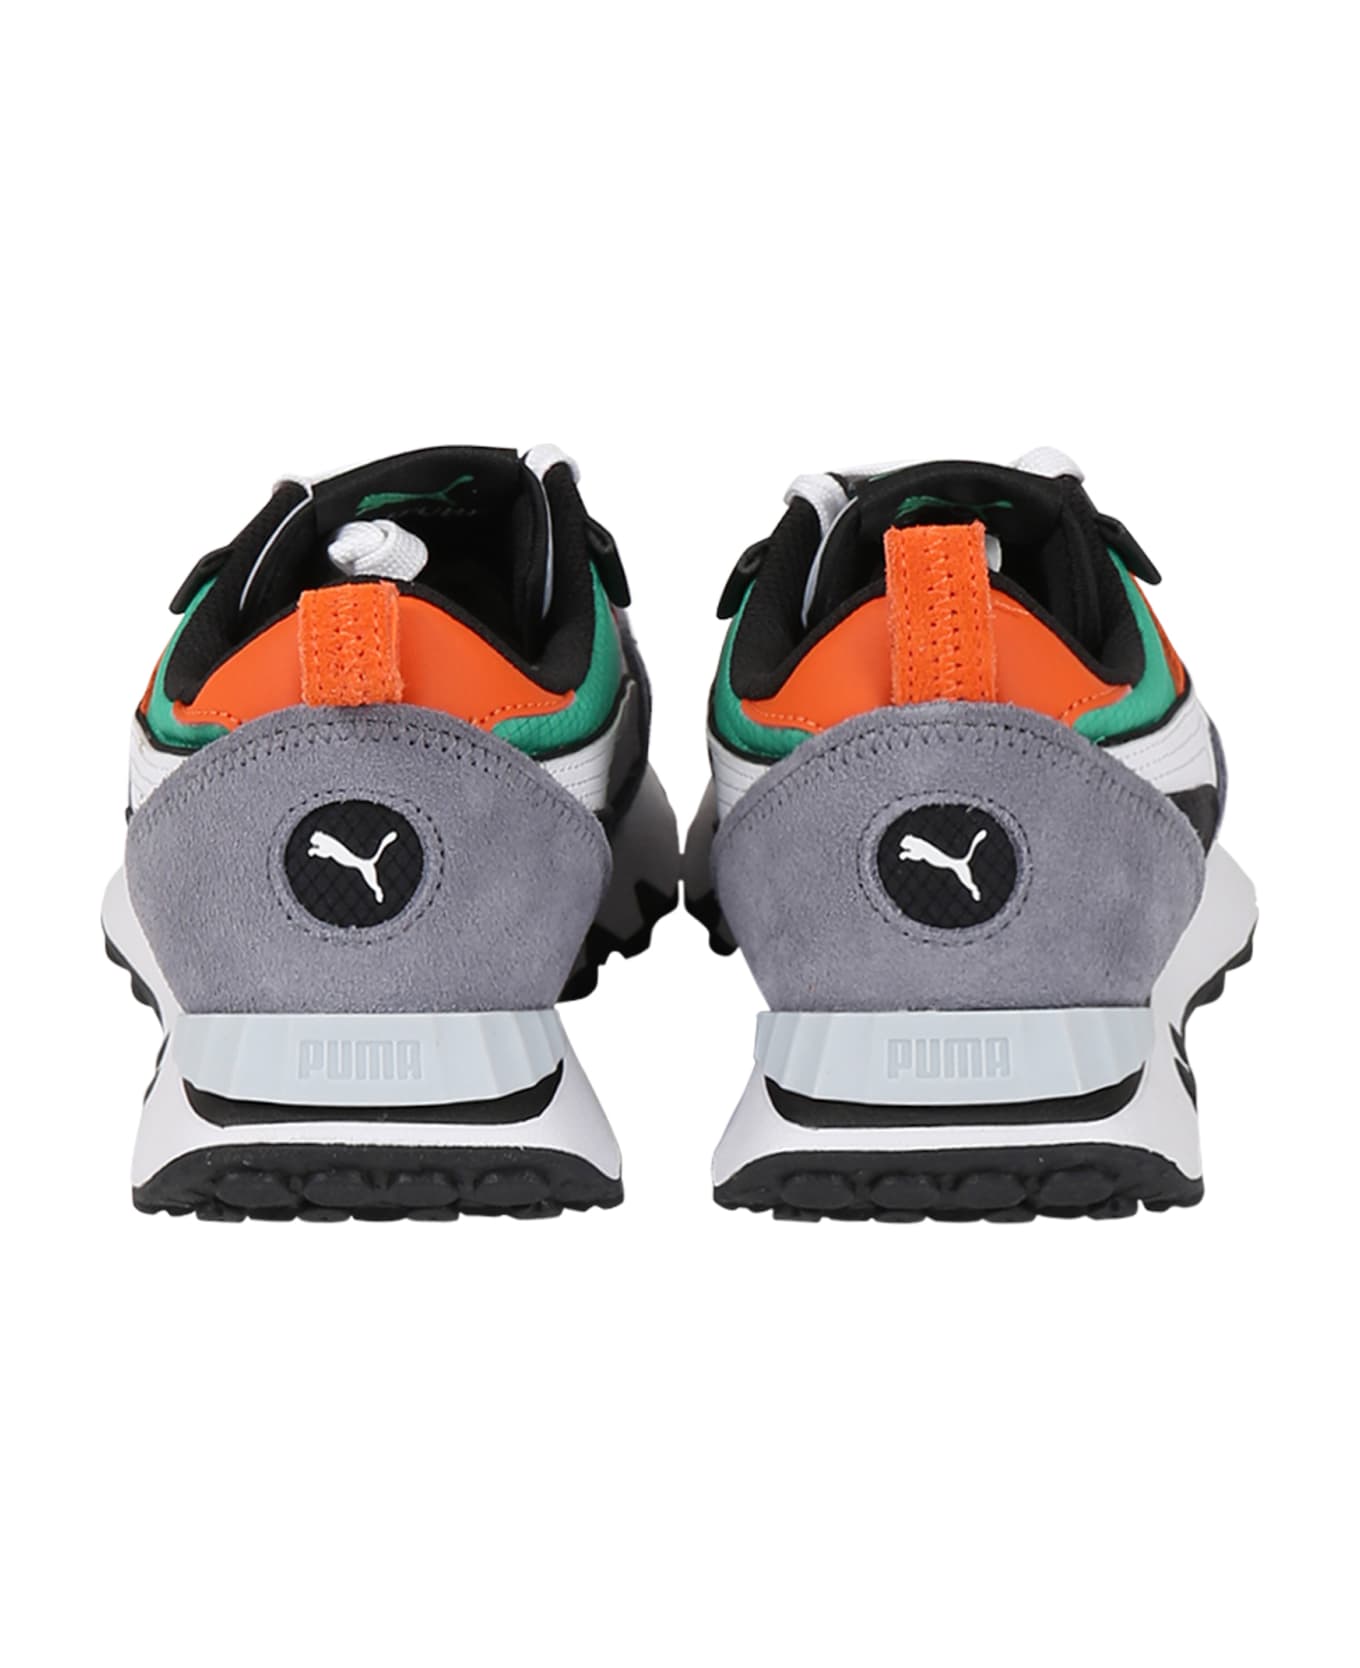 Puma Multicolor Sneakers For Boy With Logo - Multicolor